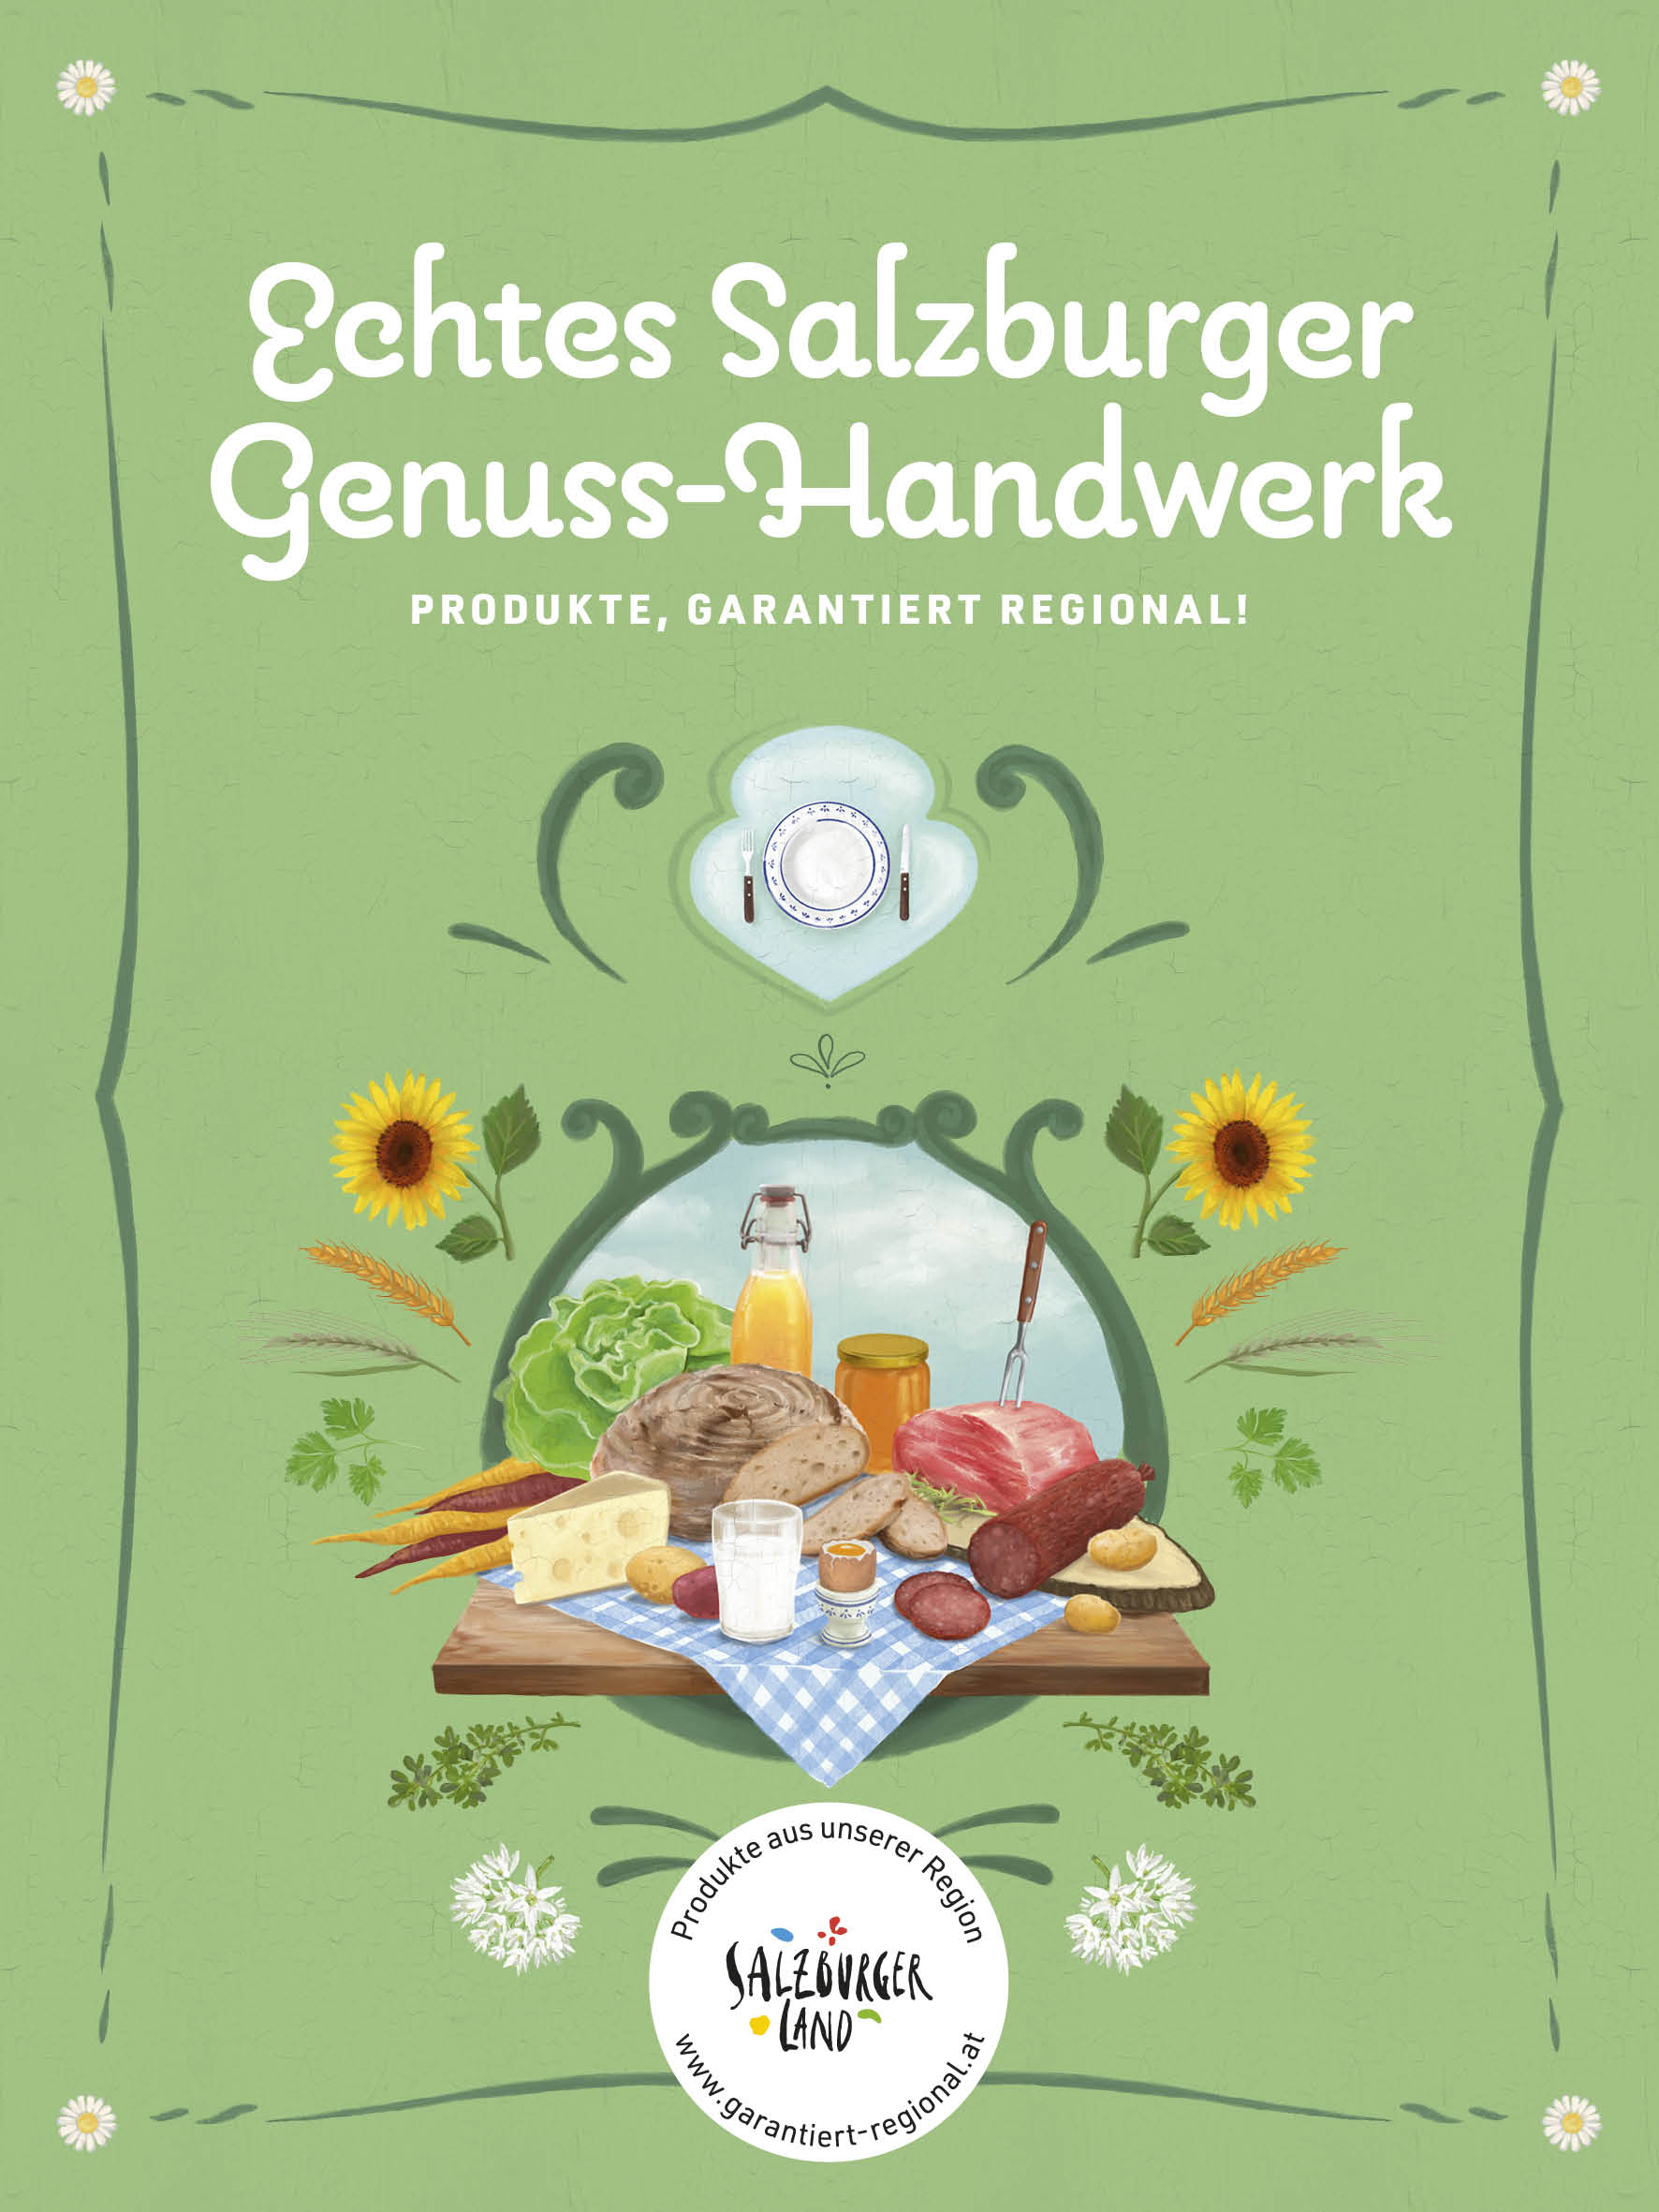 Gärtnerei Kral bei Salzburg schmeckt